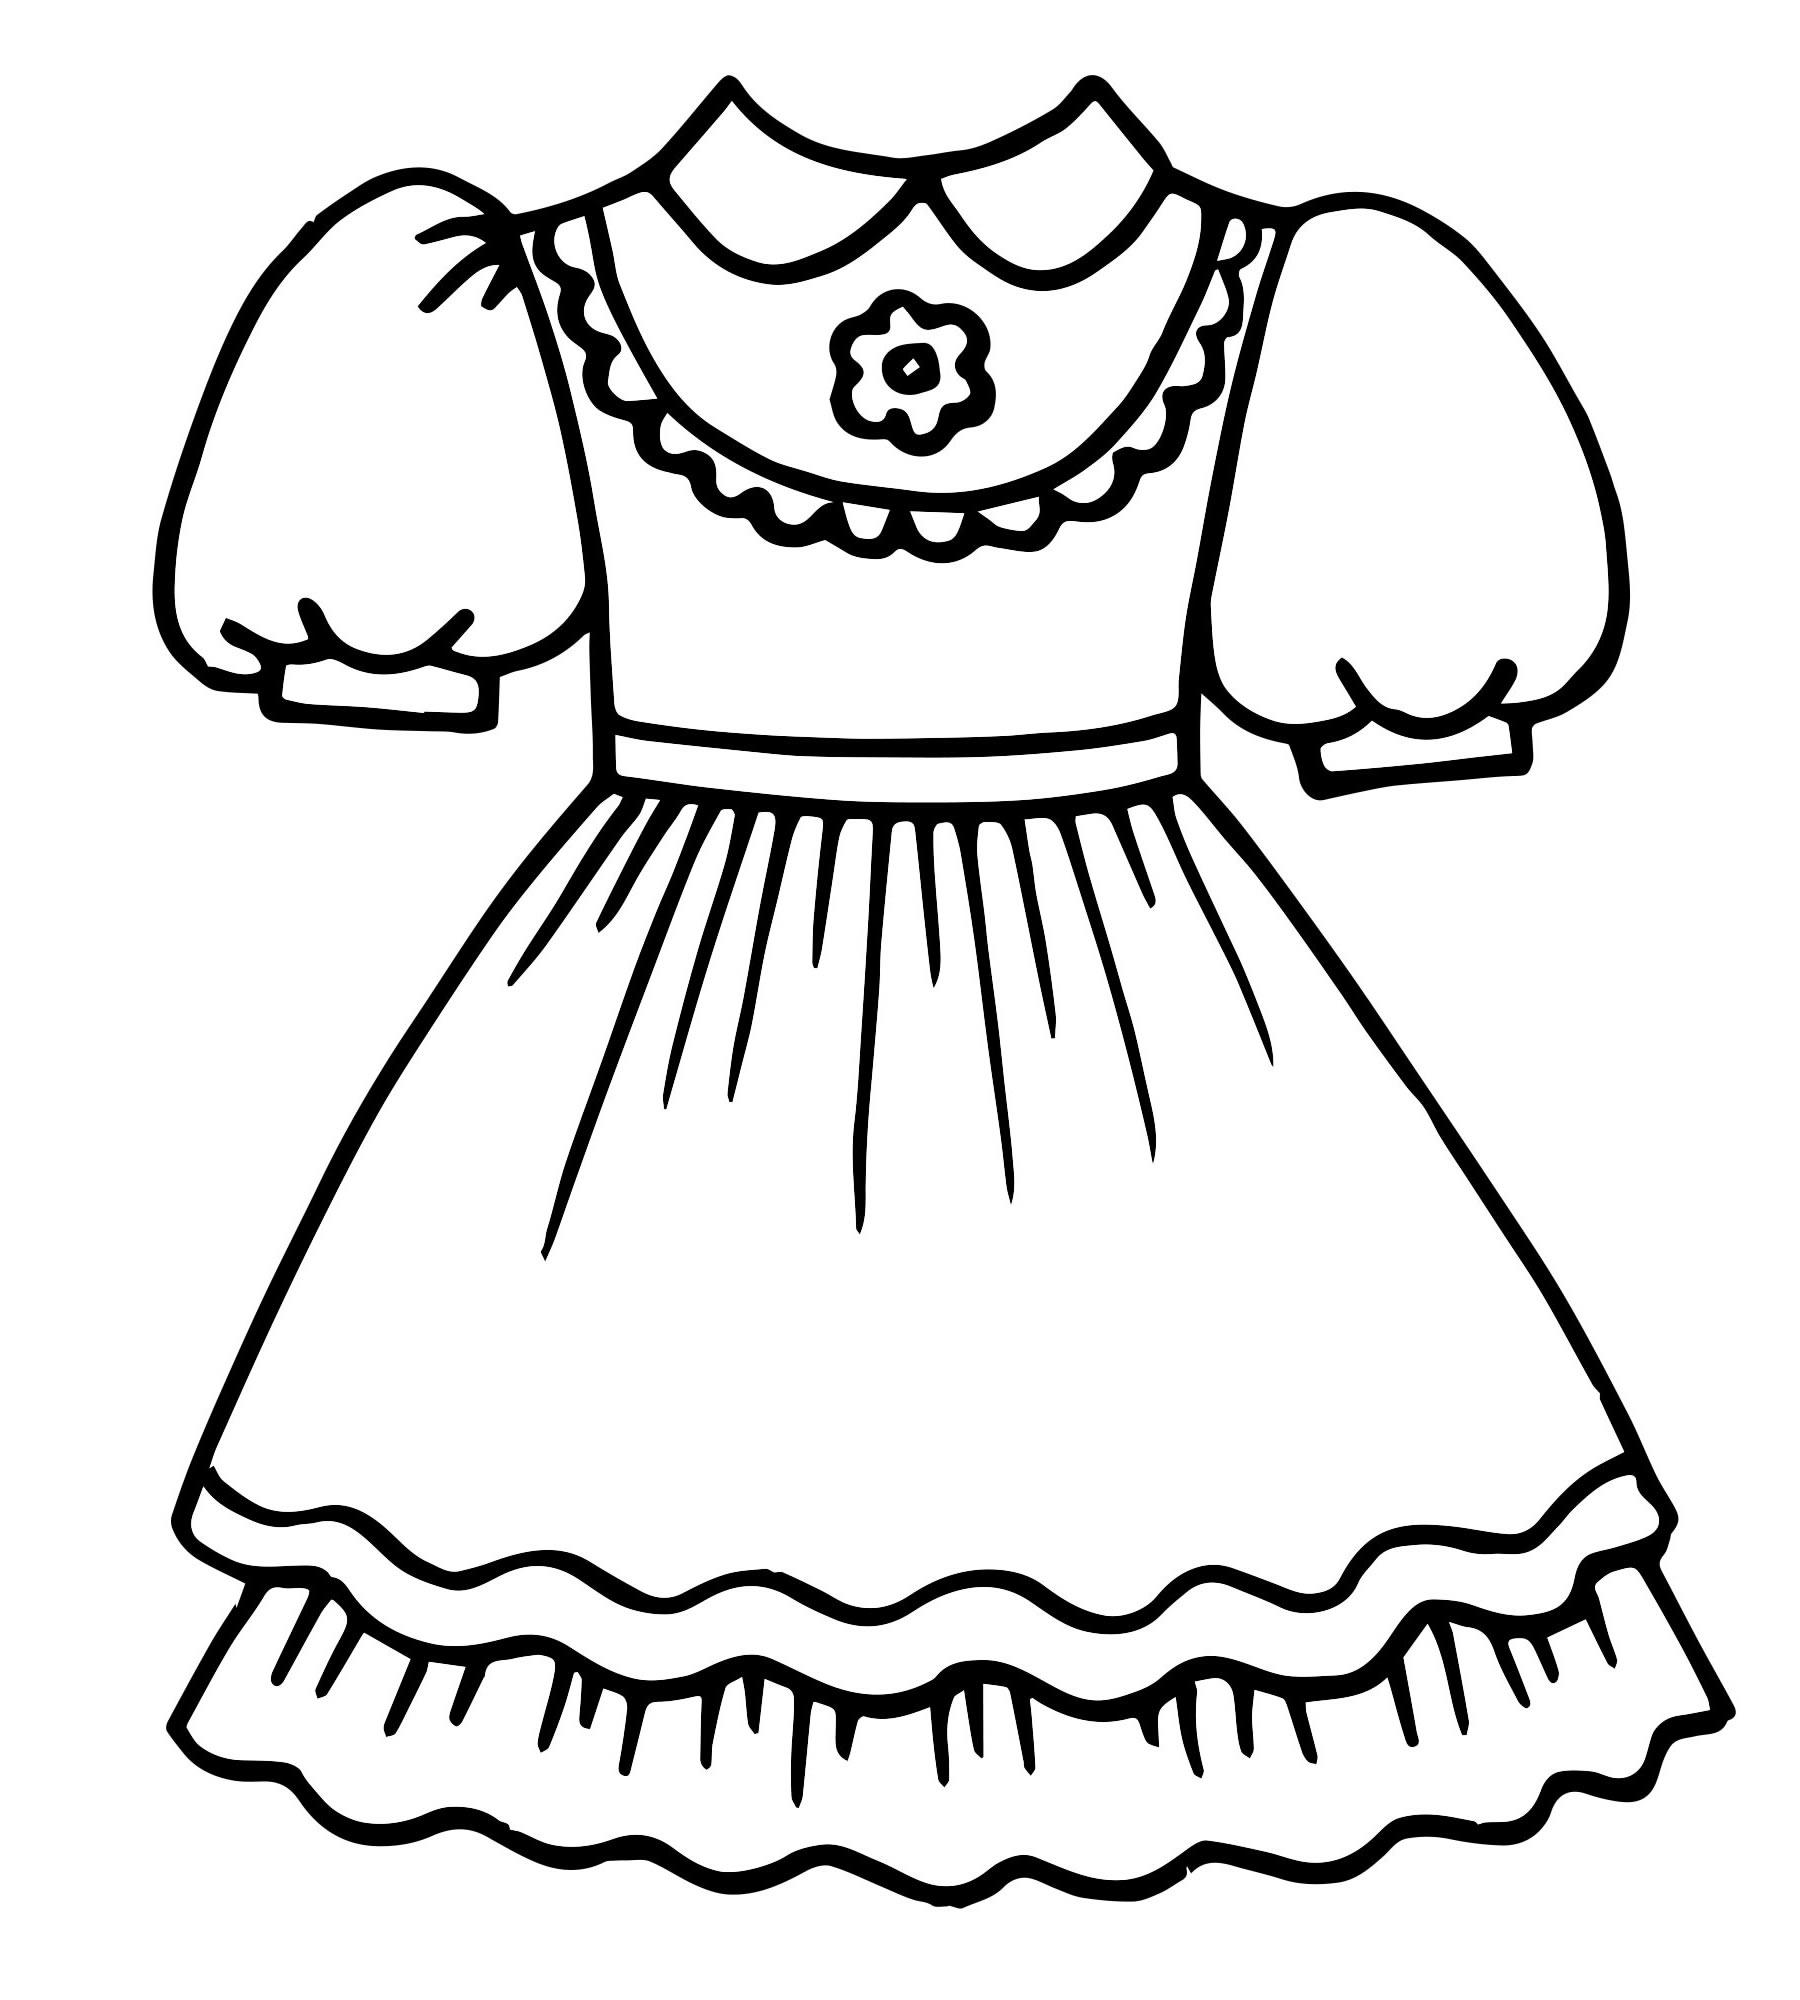 Раскраска История платья от DJECO за 2 руб. Купить в официальном магазине DJECO